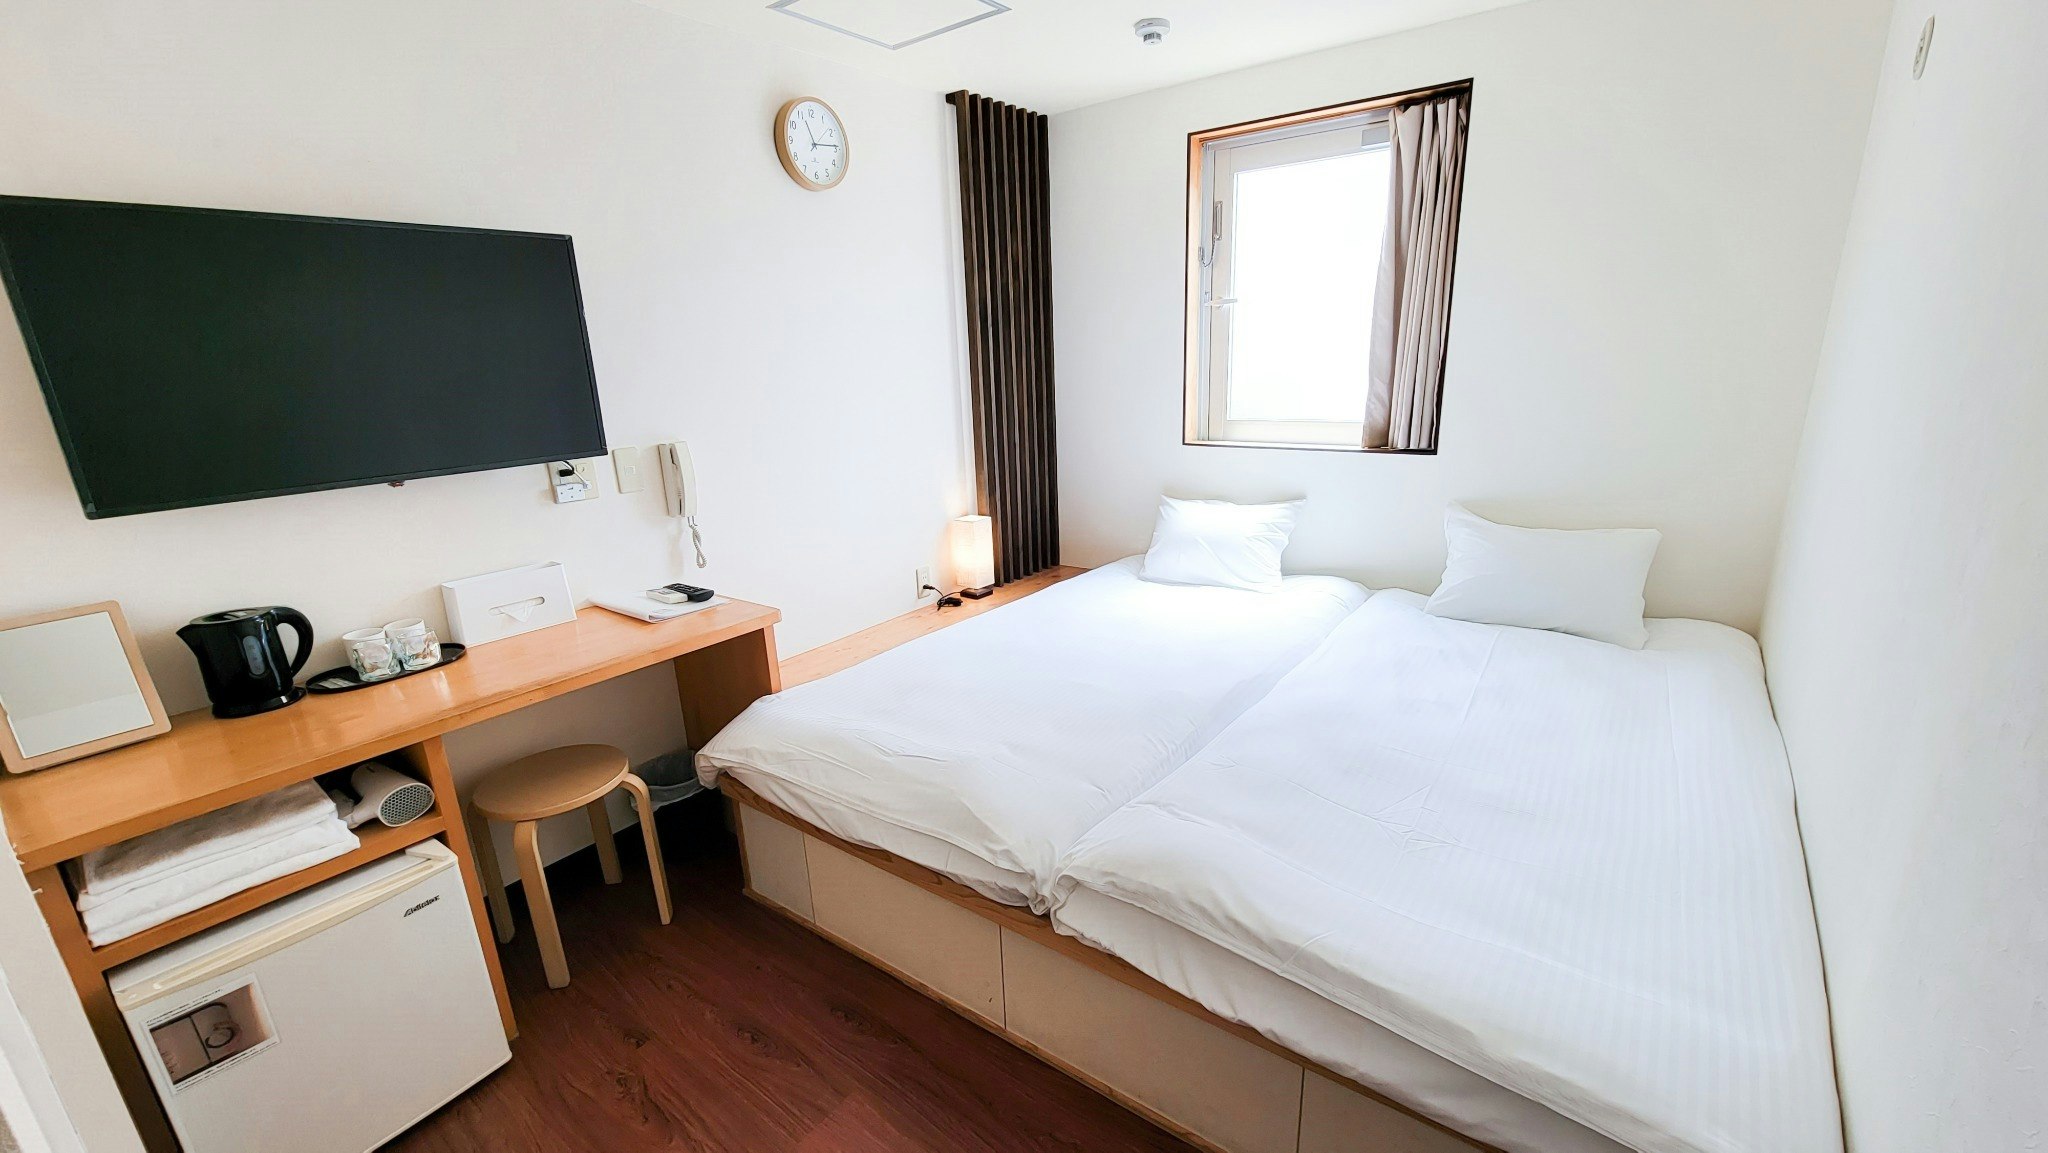 【1~2人部屋・素泊まり】日本の伝統とミニマリズムの調和。畳の宿泊で感じる平穏